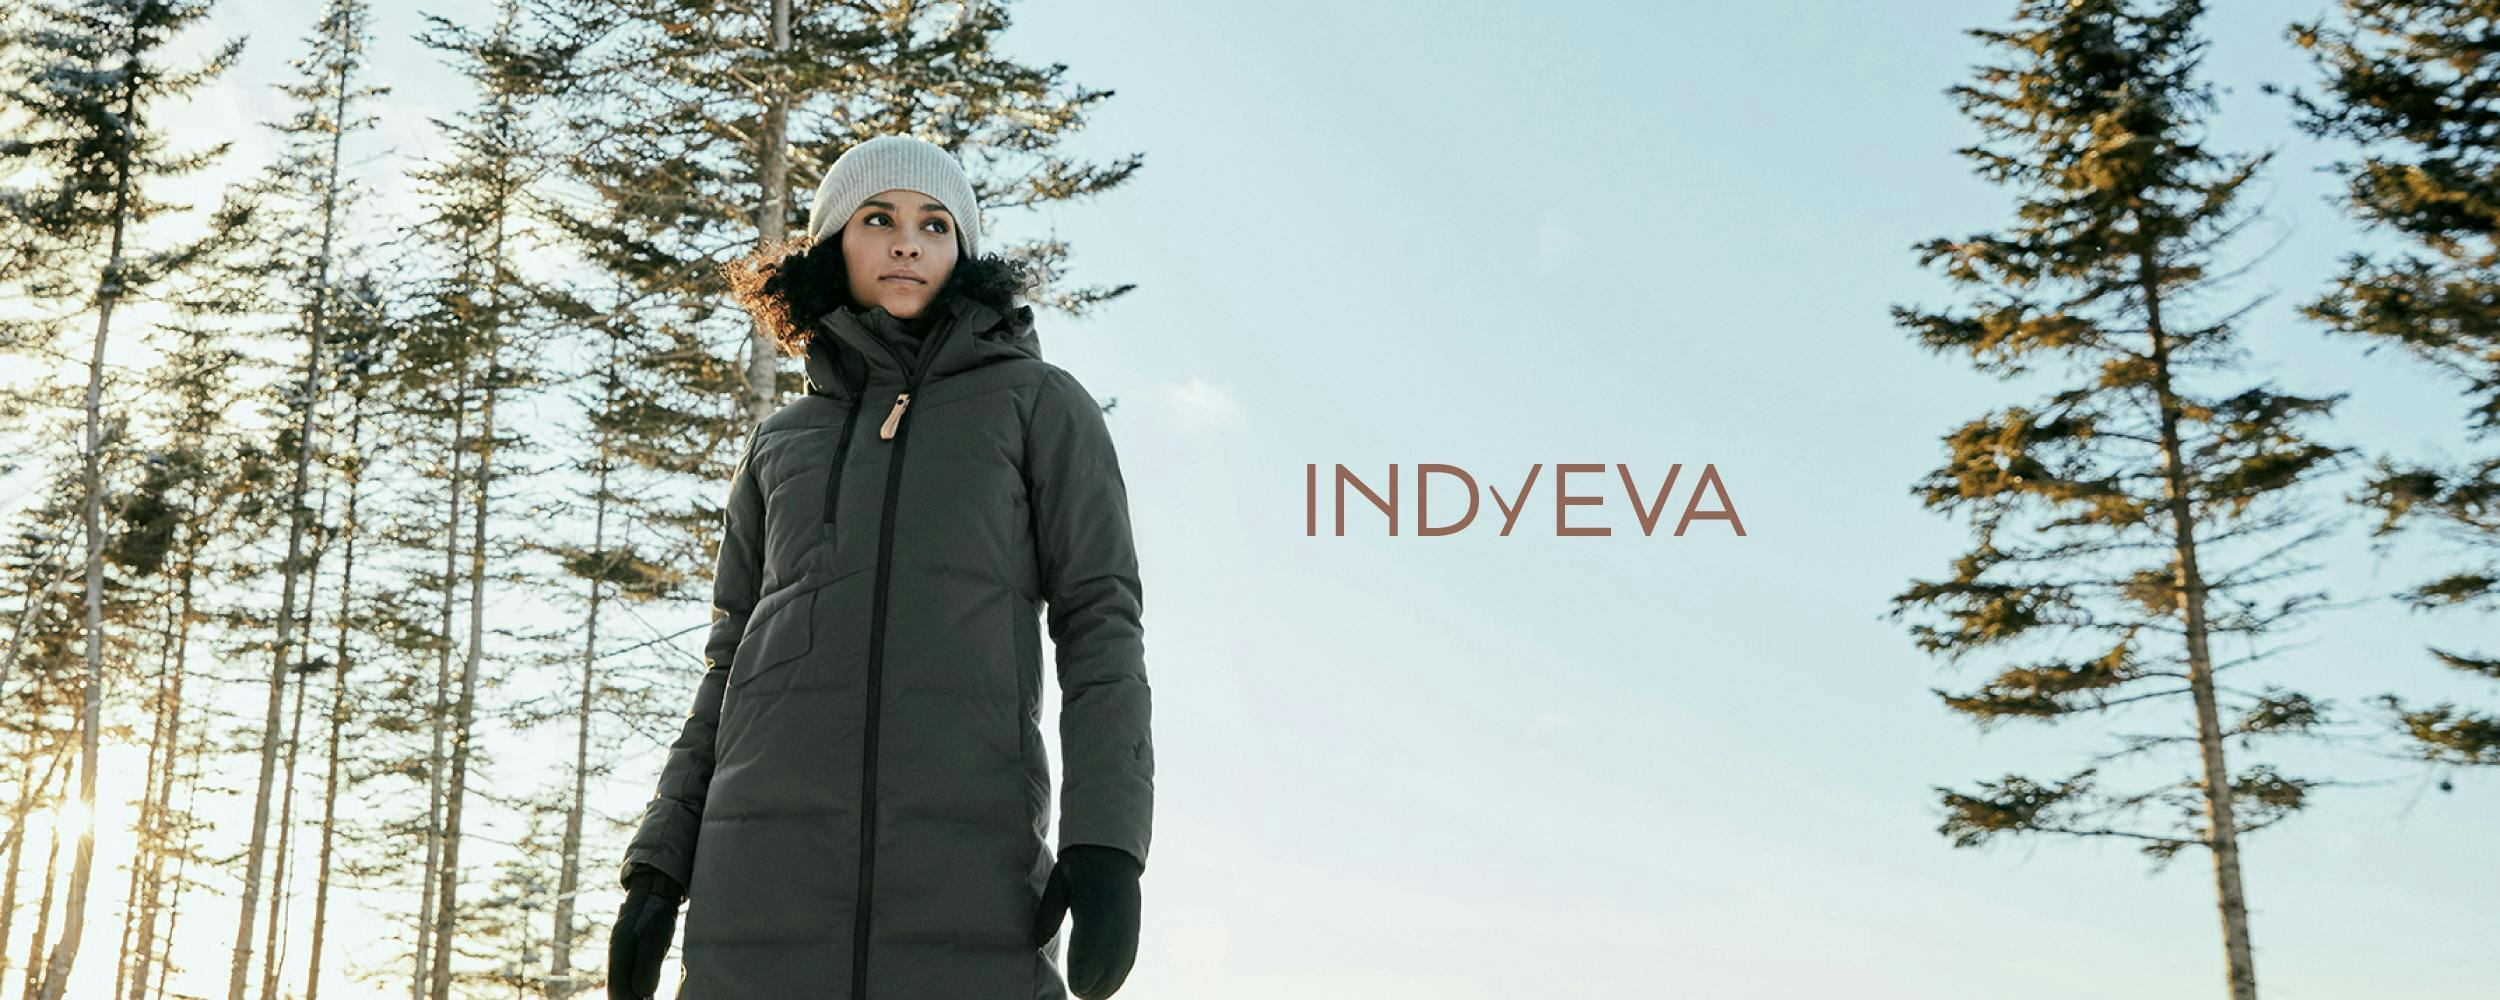 Indyeva fabrique des vêtements de plein air pour les femmes qui sont animées par le sens de l’aventure et qui souhaitent explorer avec style.